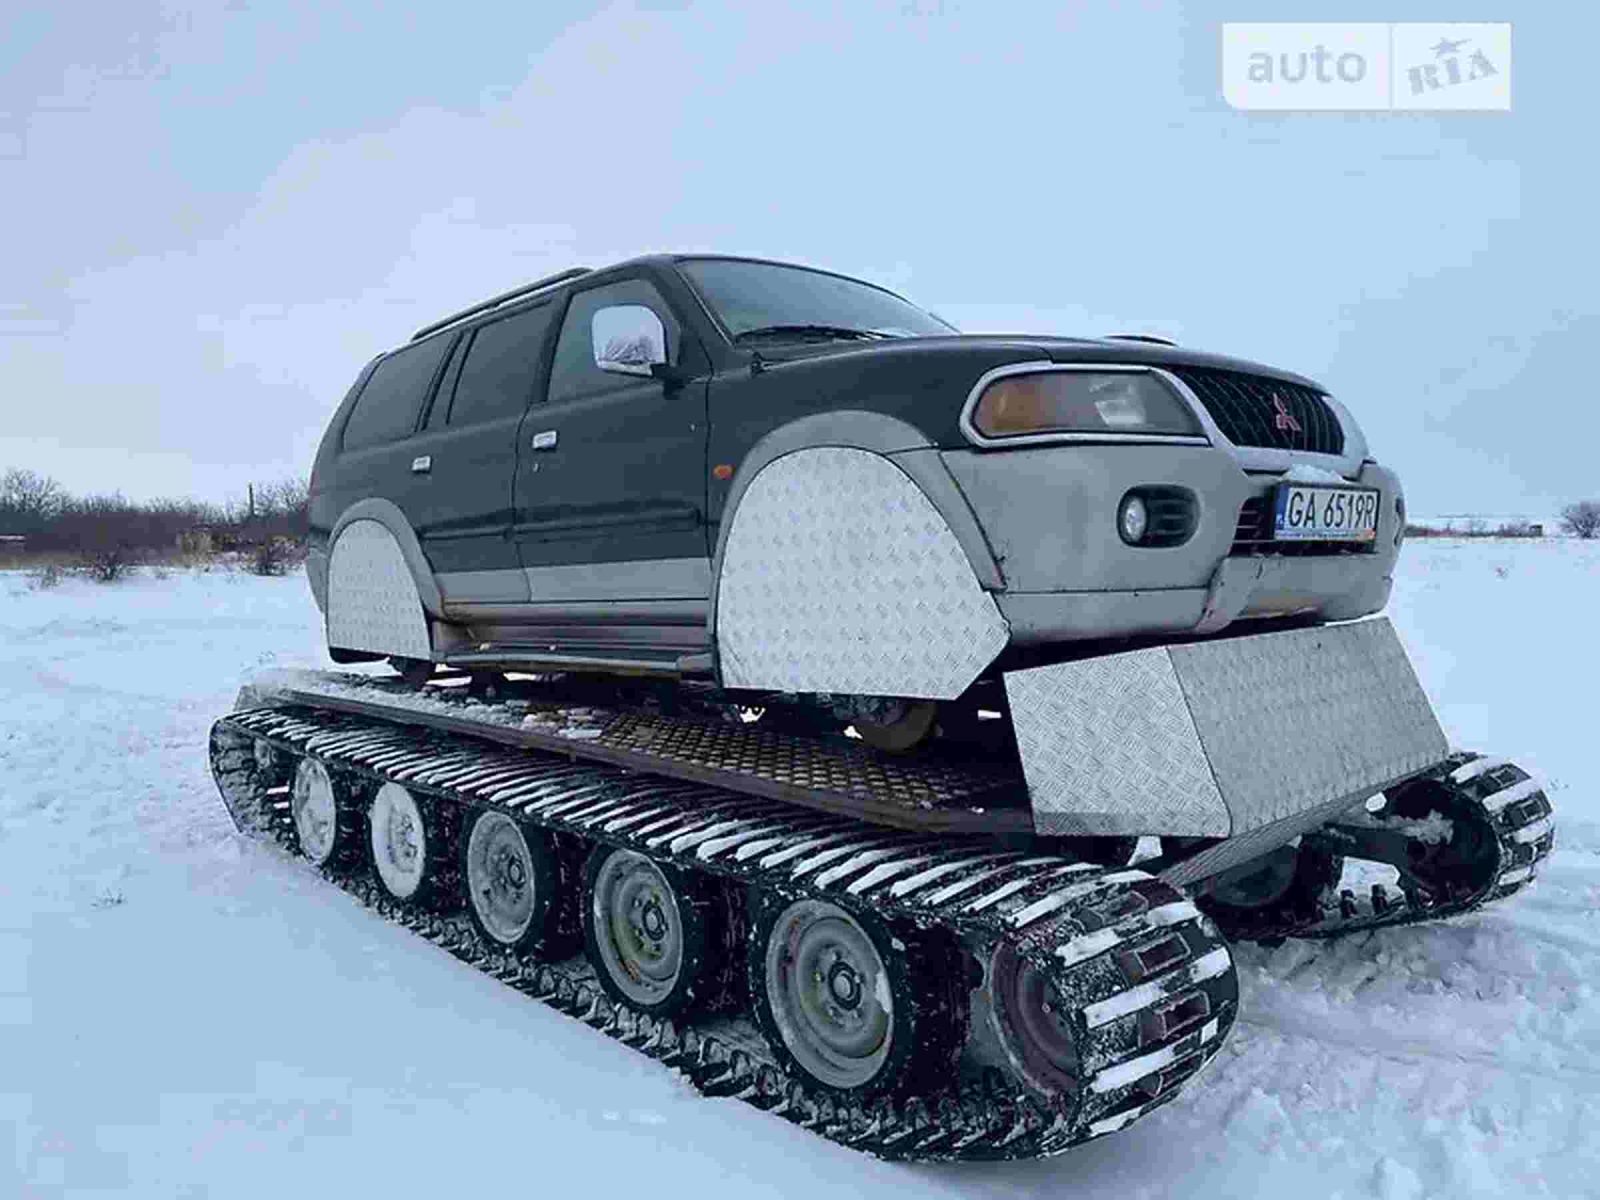 В Харькове продают гибрид машины и танка - джип на гусеницах (фото, видео)